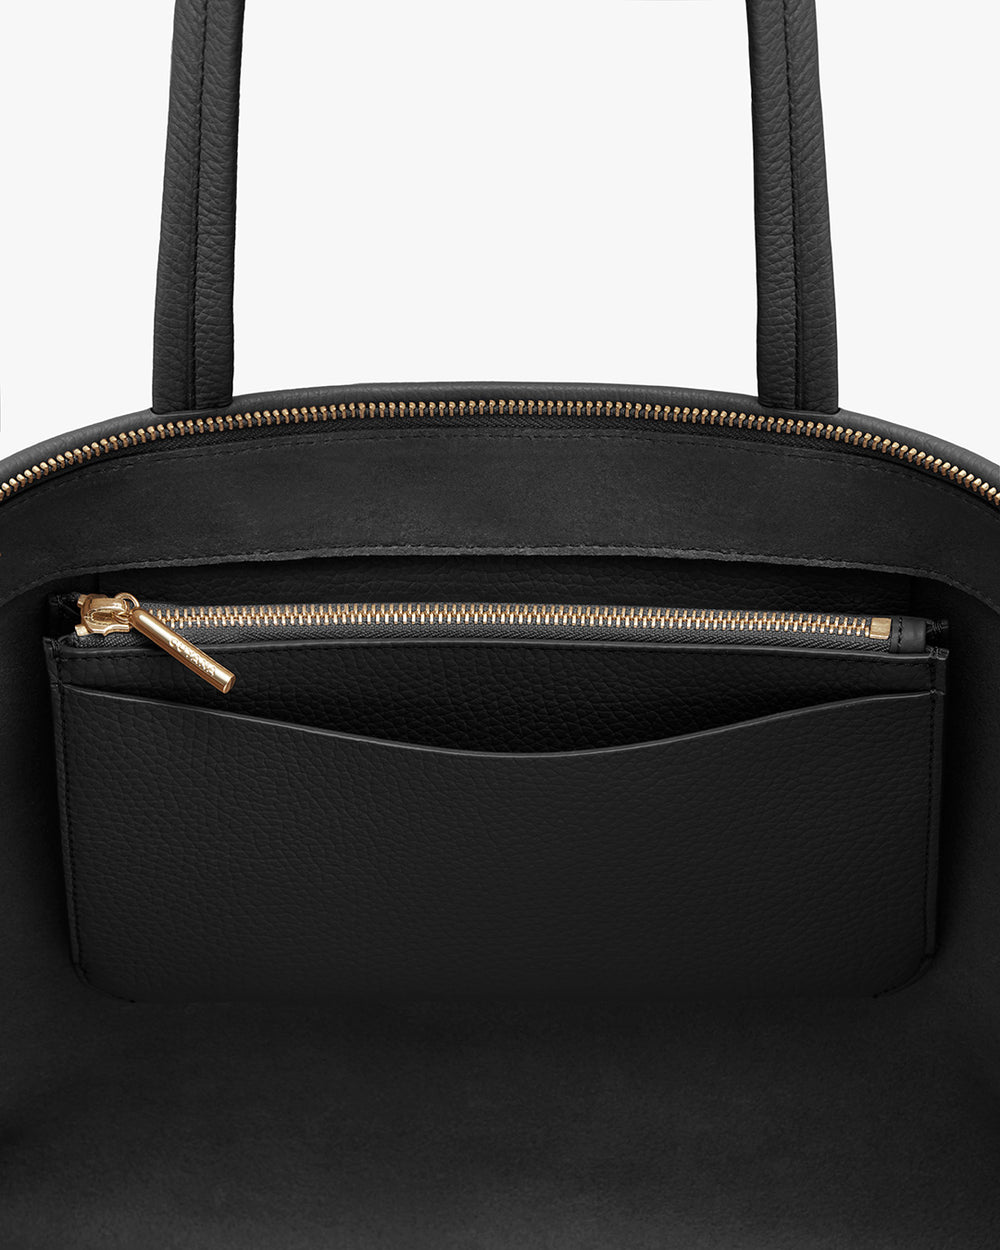 Open handbag with dual handles and an external zipper pocket.